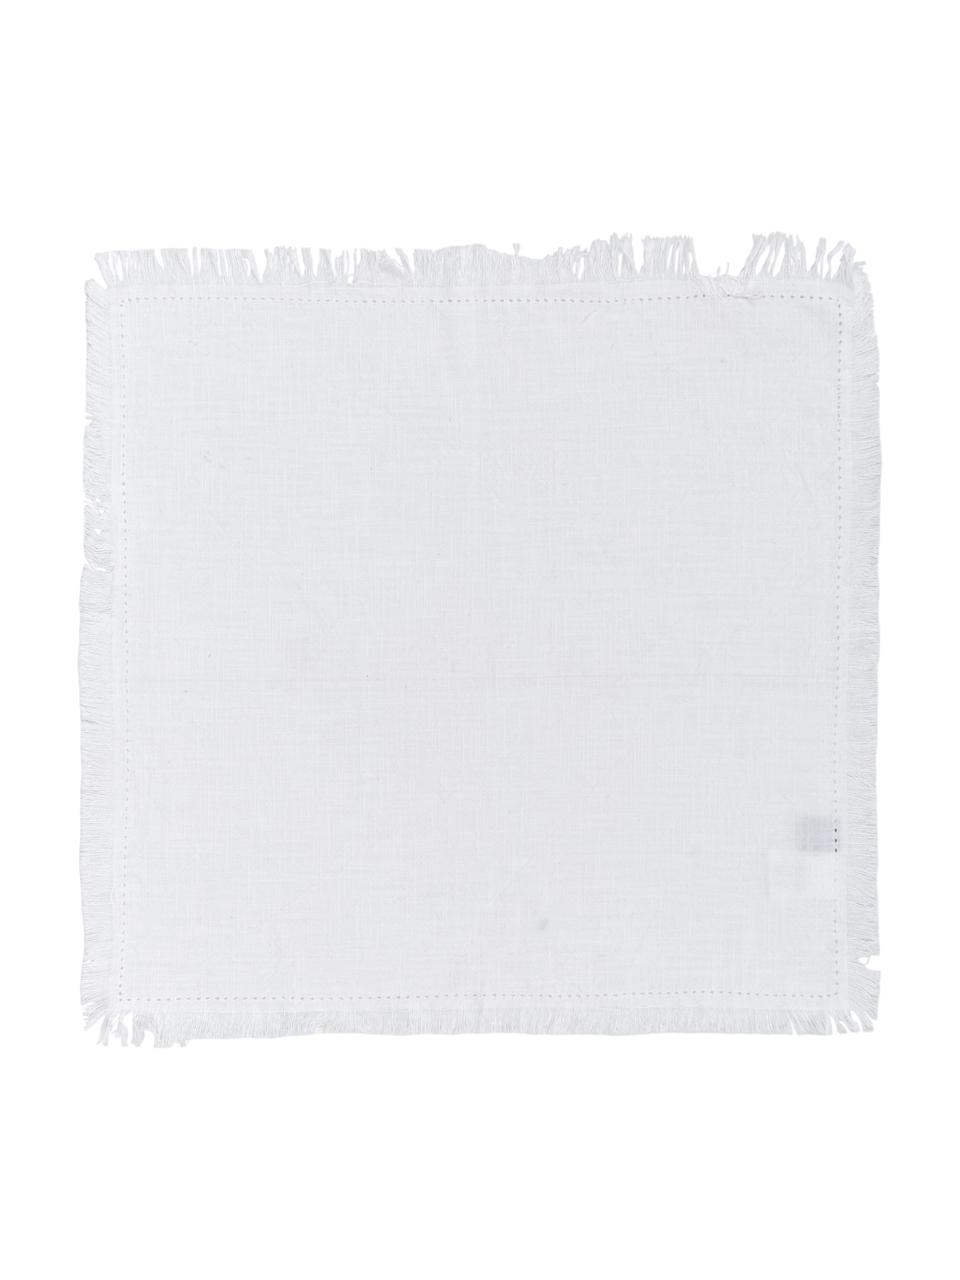 Serwetka z bawełny z frędzlami Hilma, 2 szt., Bawełna, Biały, S 45 cm x D 45 cm